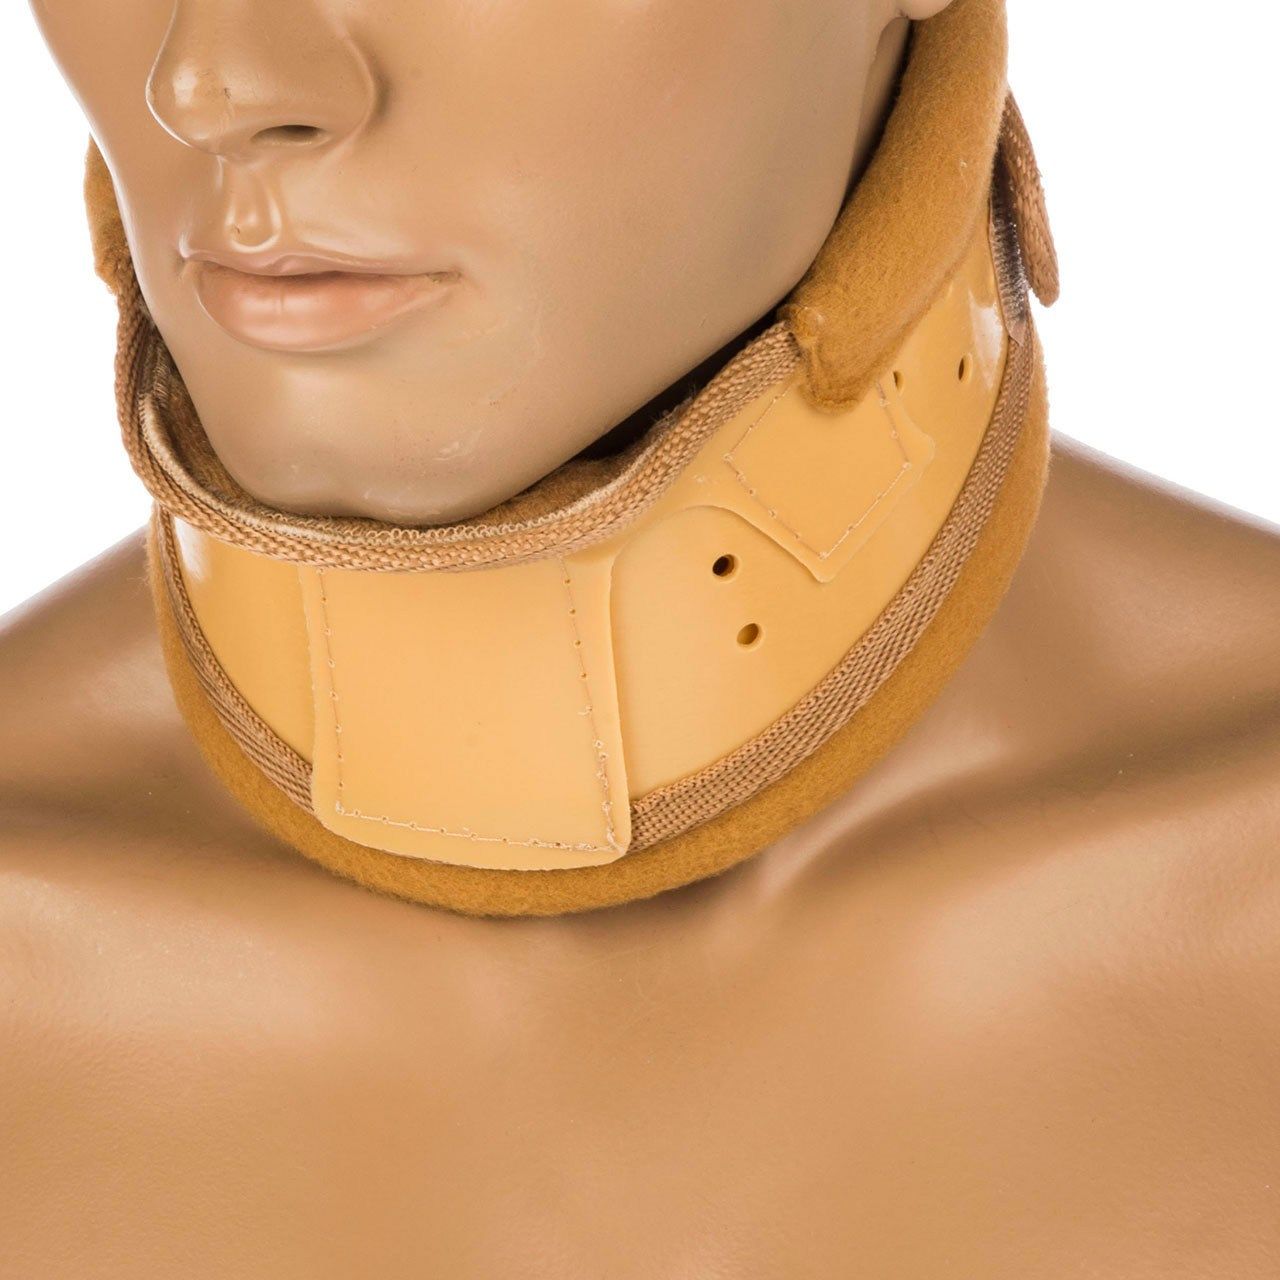 گردن بند طبی پاک سمن مدل Hard With Chain Pad سایز کوچک -  - 1